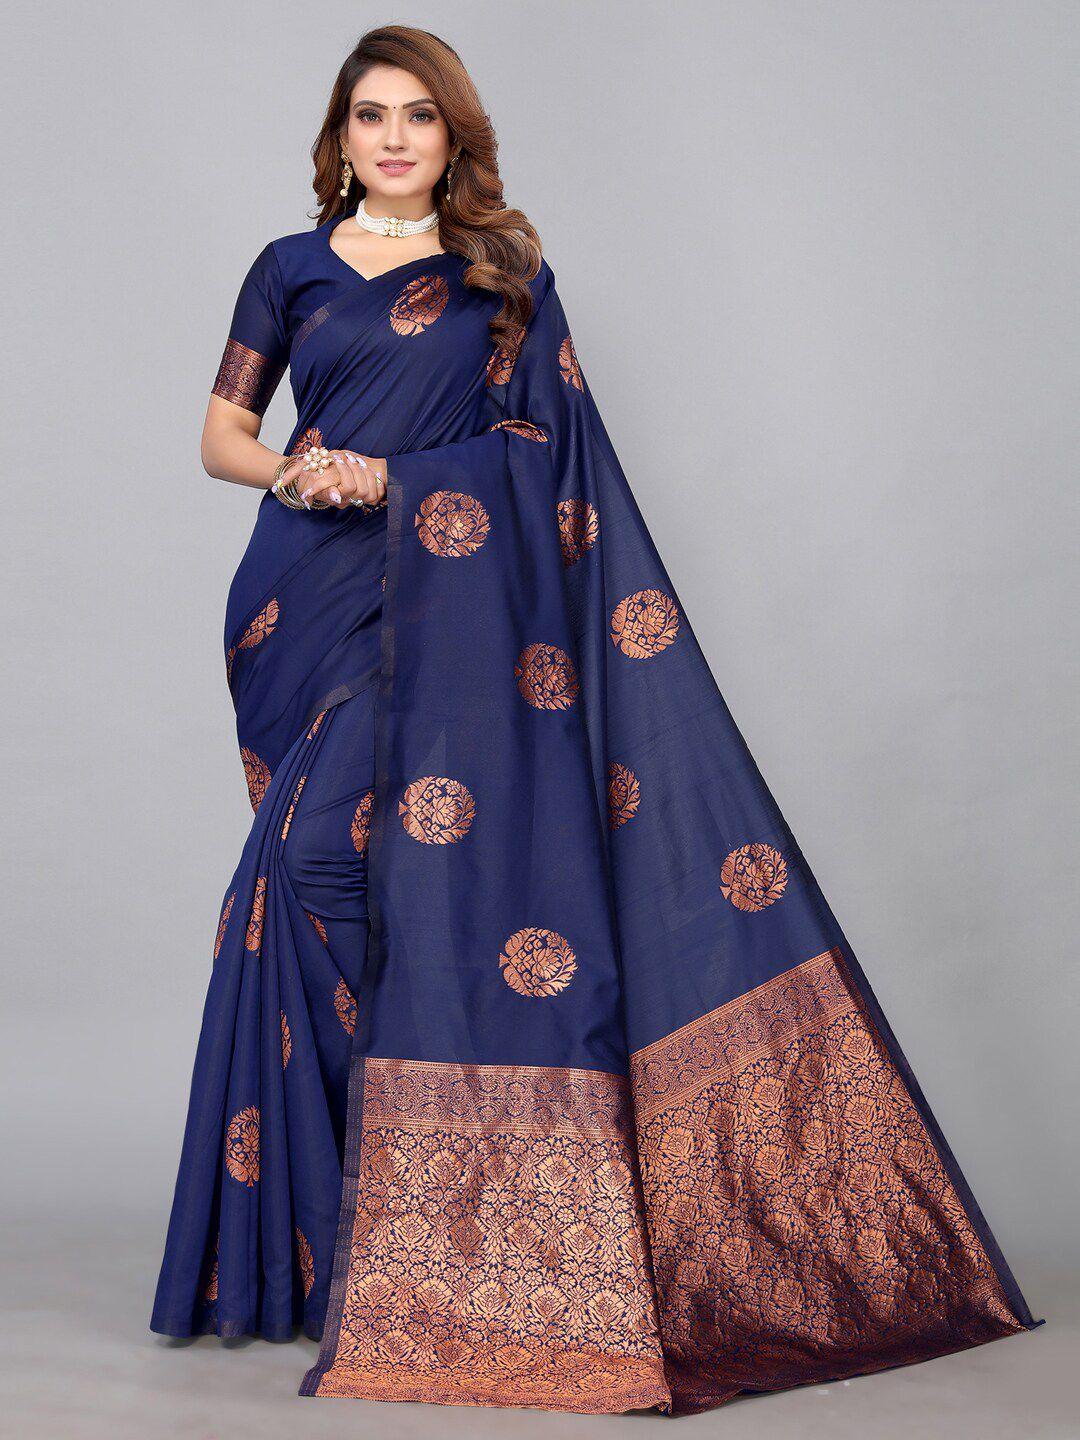 mitera navy blue & gold-toned woven design zari banarasi saree